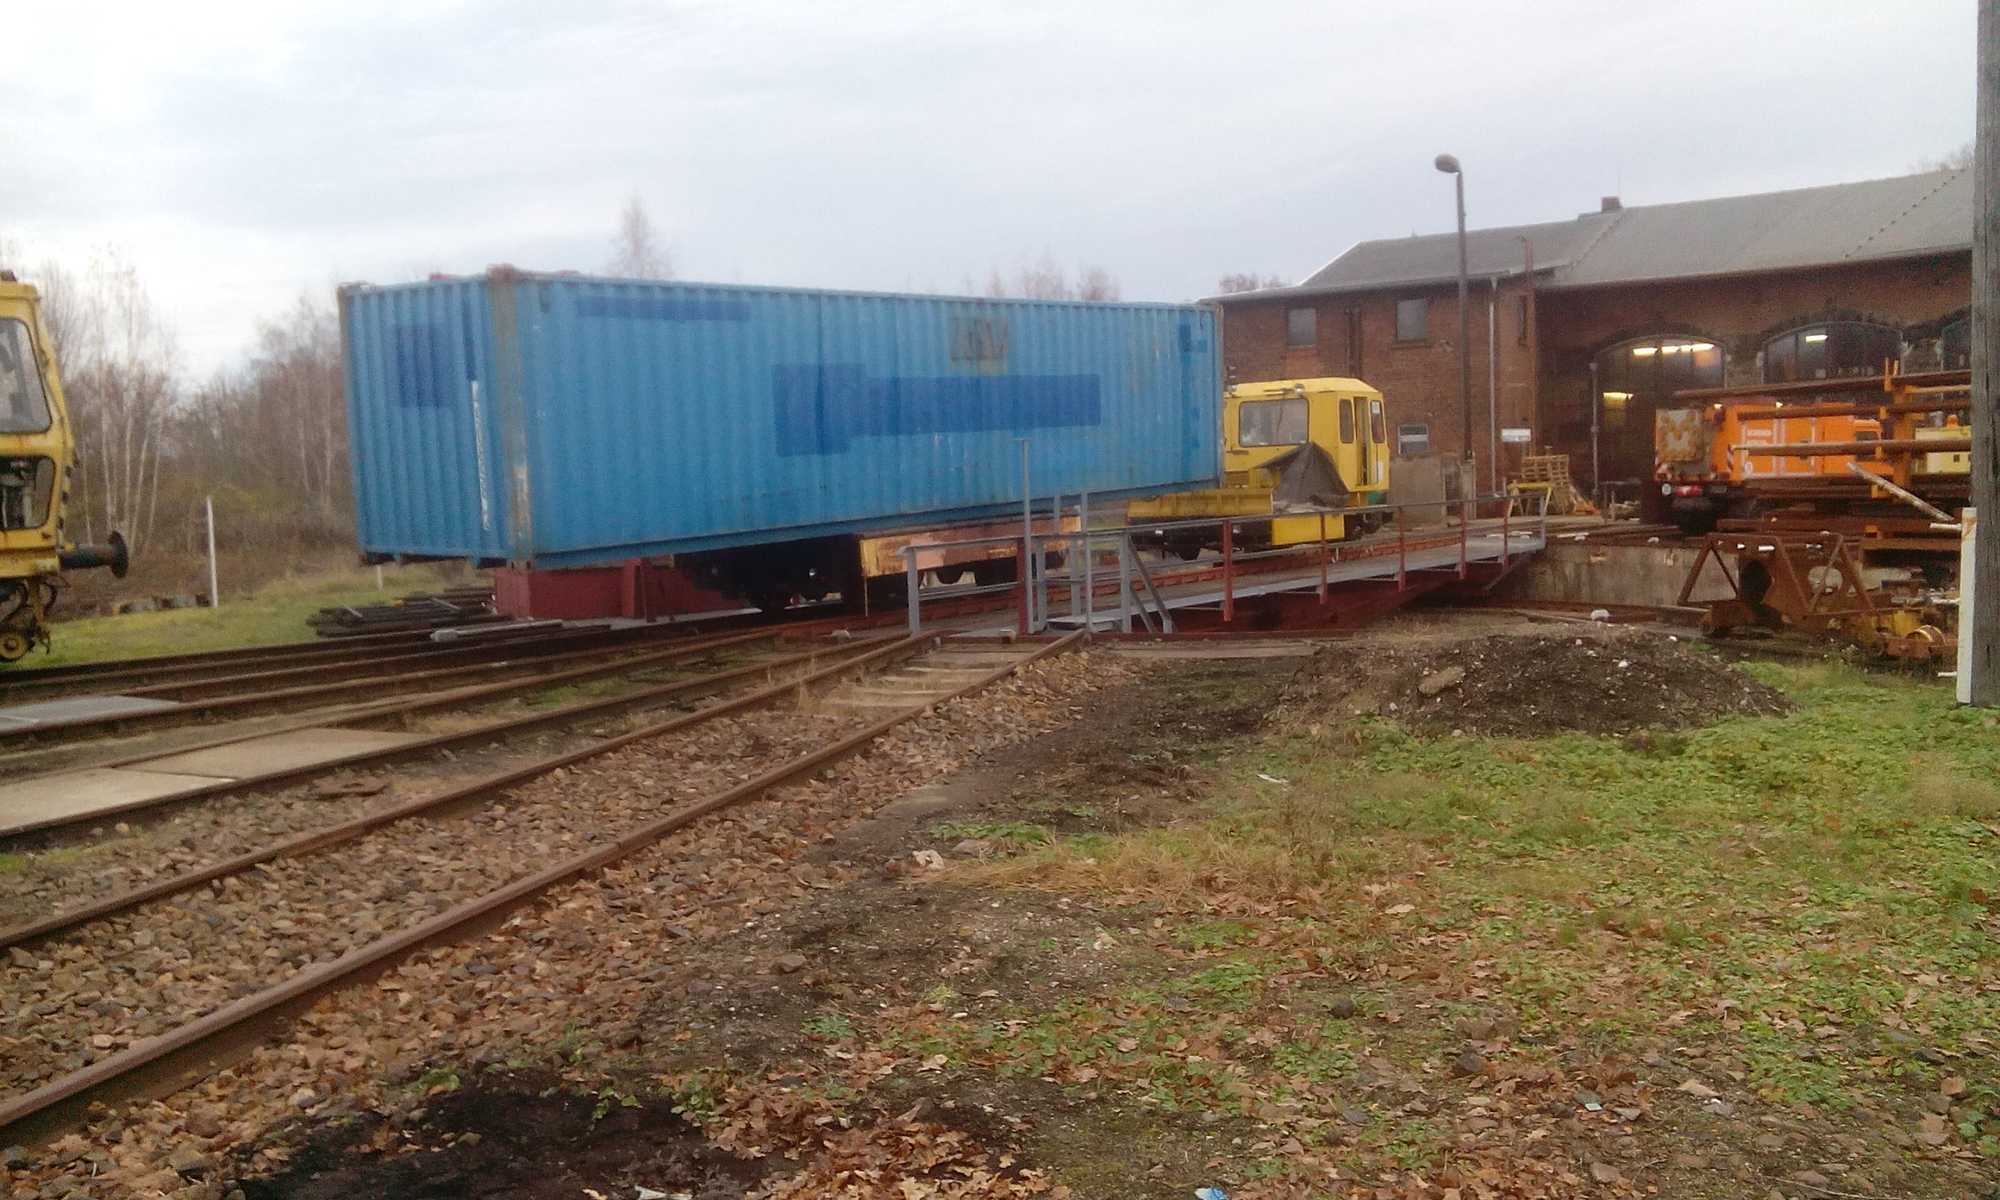 Am 27. November 2019 gelangte der erste als Lager genutzte Container der Muldentalgruppe im ehemaligen Bw Rochlitz an seinen neuen Standort. Zum Transport dienten standesgemäß Eisenbahnfahrzeuge – aber keine Containerwagen, sondern ein von einem Skl gezogener Kl-Beiwagen.